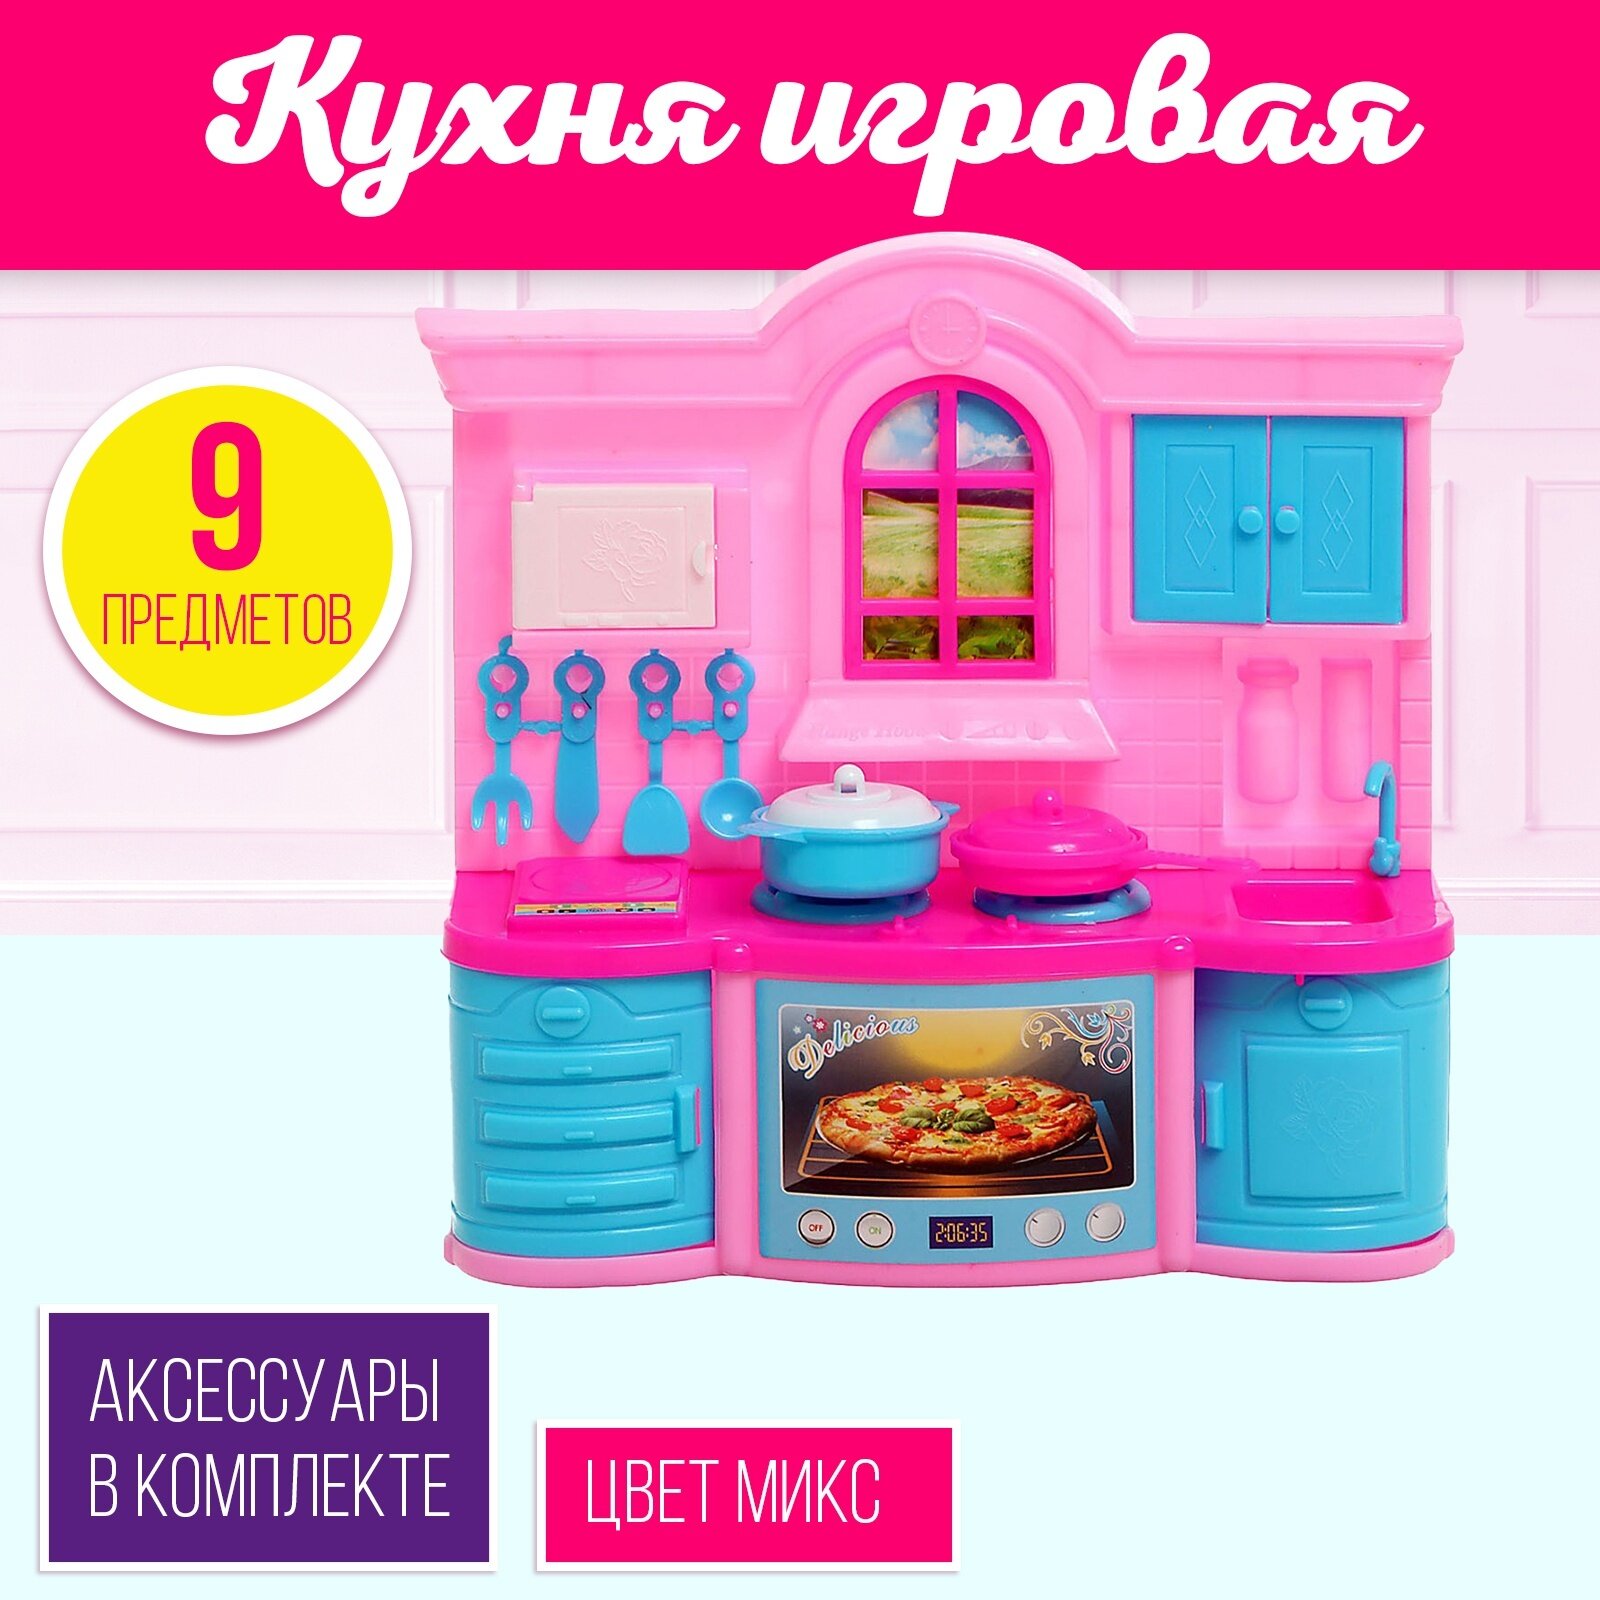 Игровой набор «Кухня для куклы», цвета микс